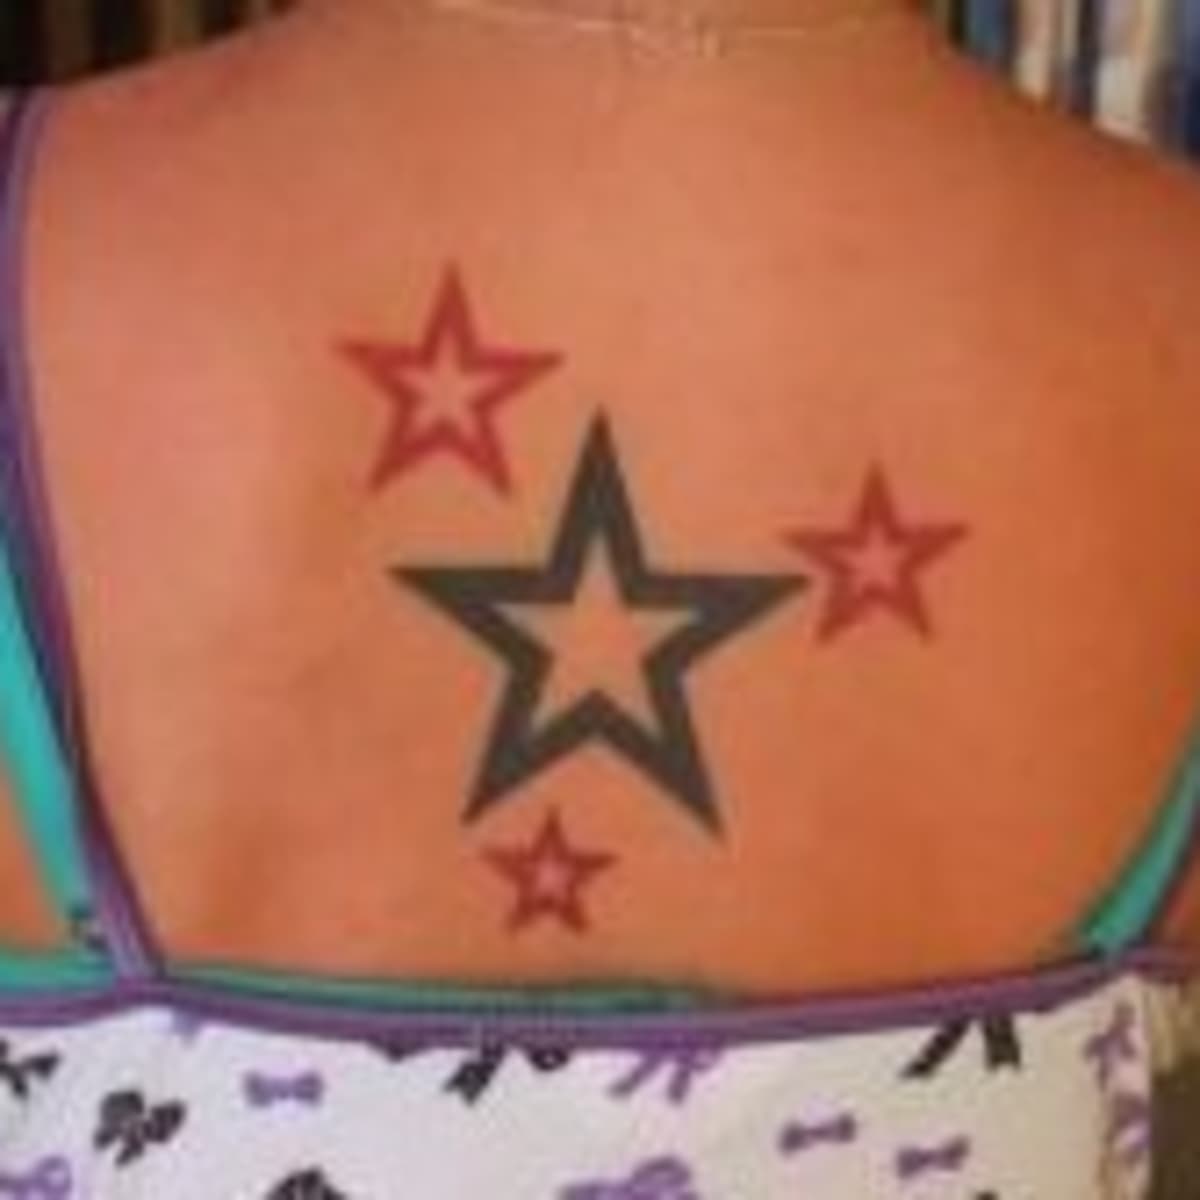 Black star tattoo  Black star tattoo studio  Facebook